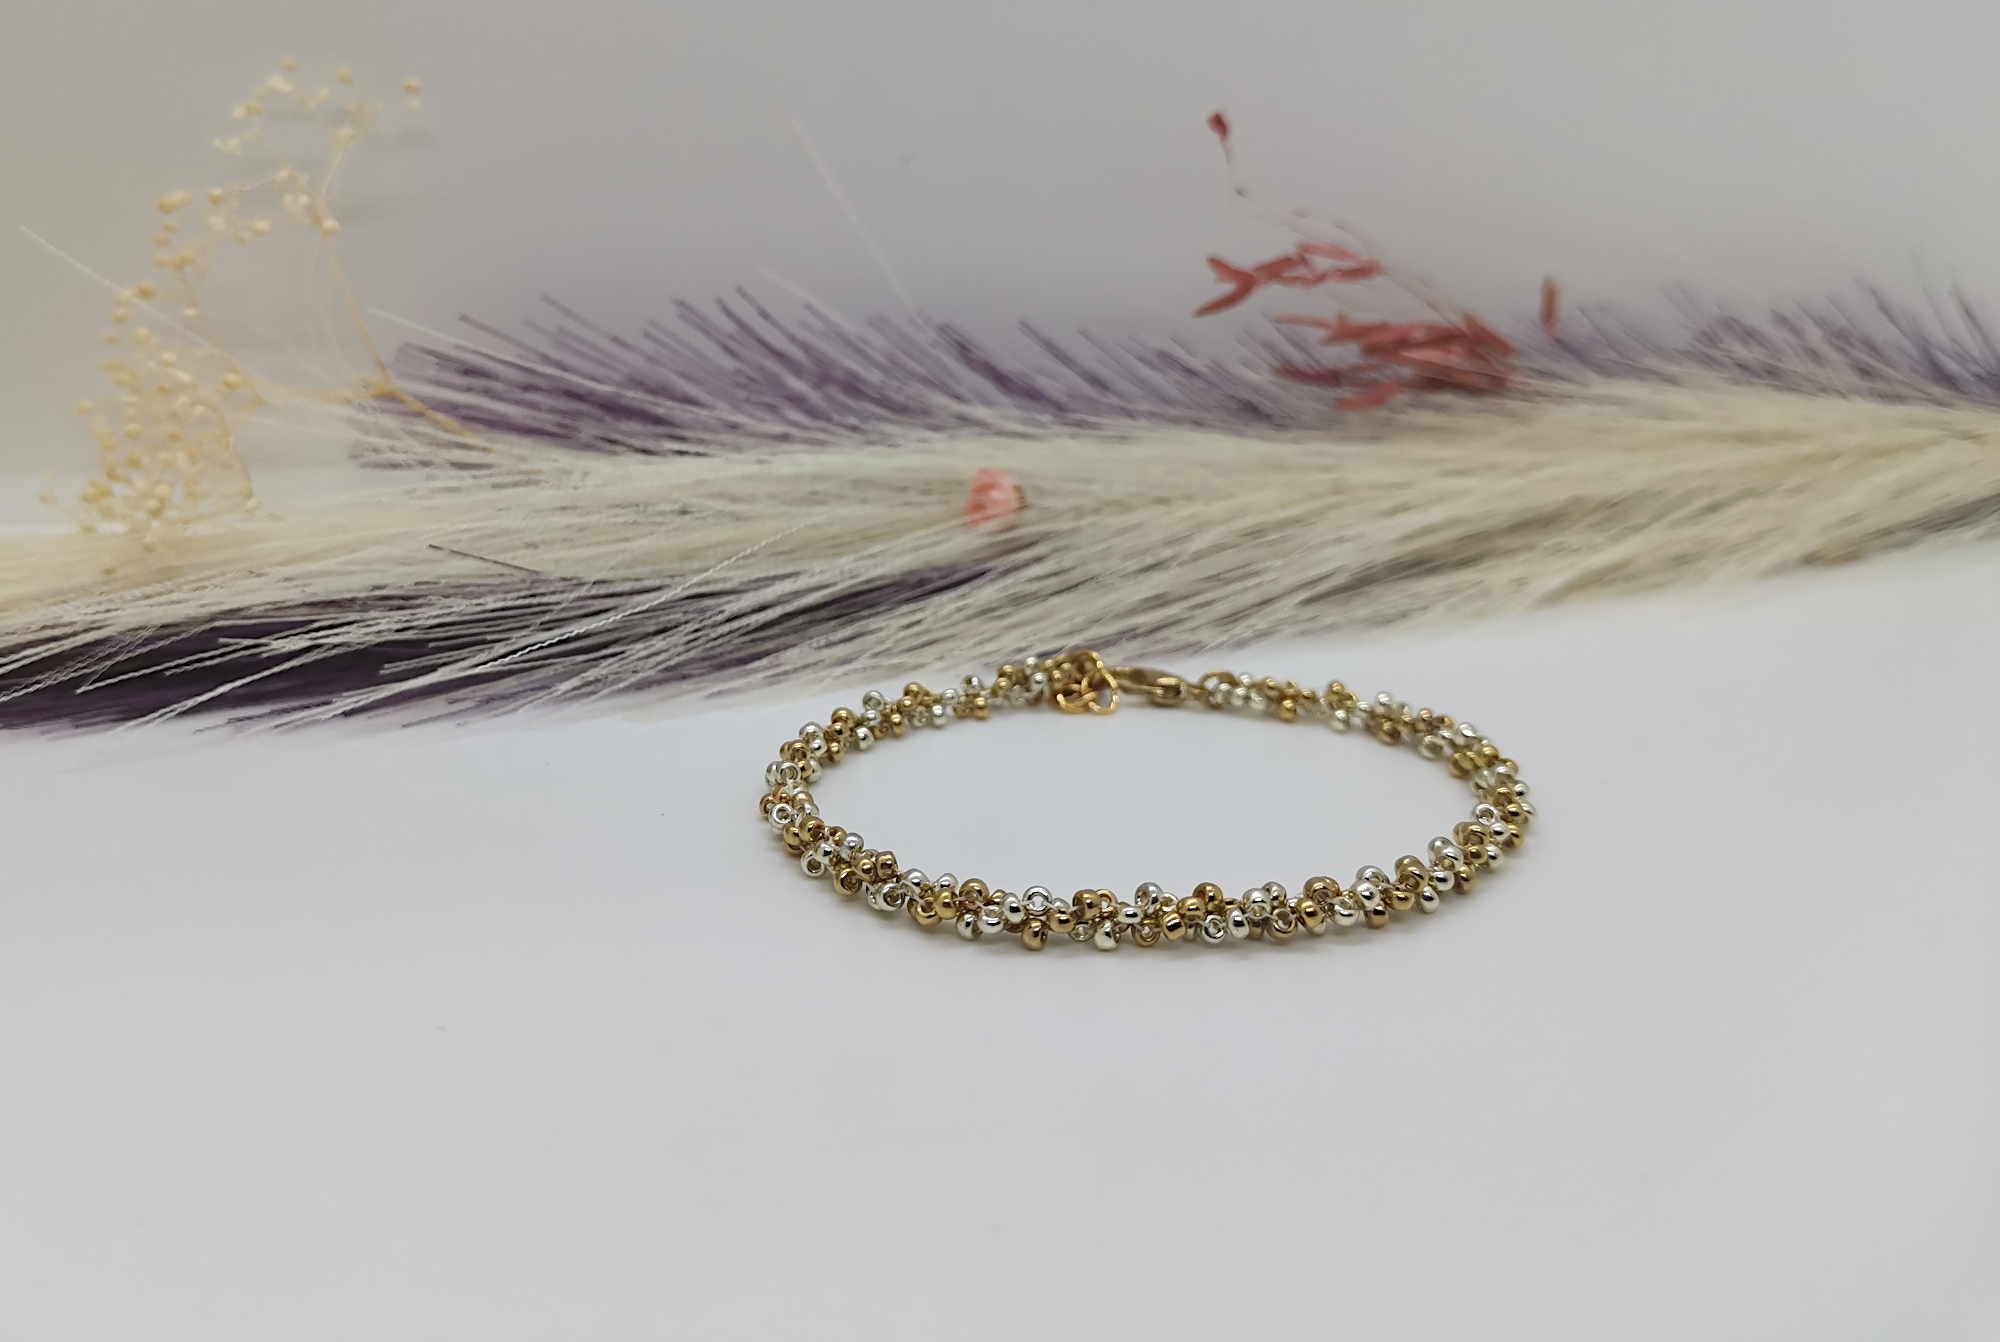 Bracelet minimaliste Allya pour femme. Perles de rocailles galvanisées or et argent. Fermoir mousqueton et extension laiton doré à lor fin